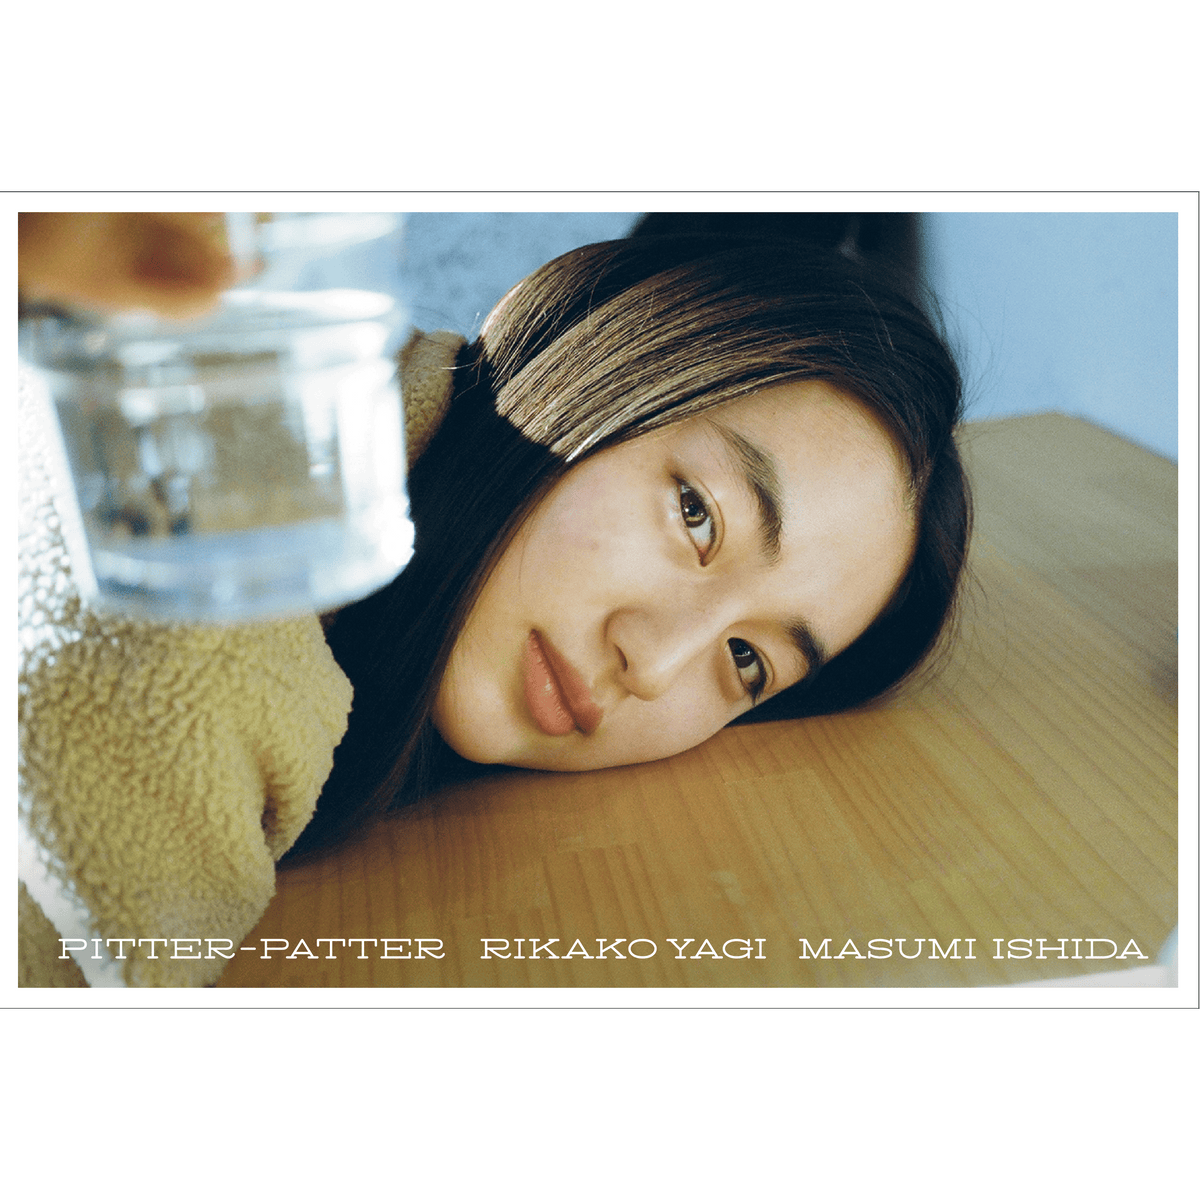 【初回限定特装版】八木莉可子写真集 Pitter-Patter – 青幻舎 